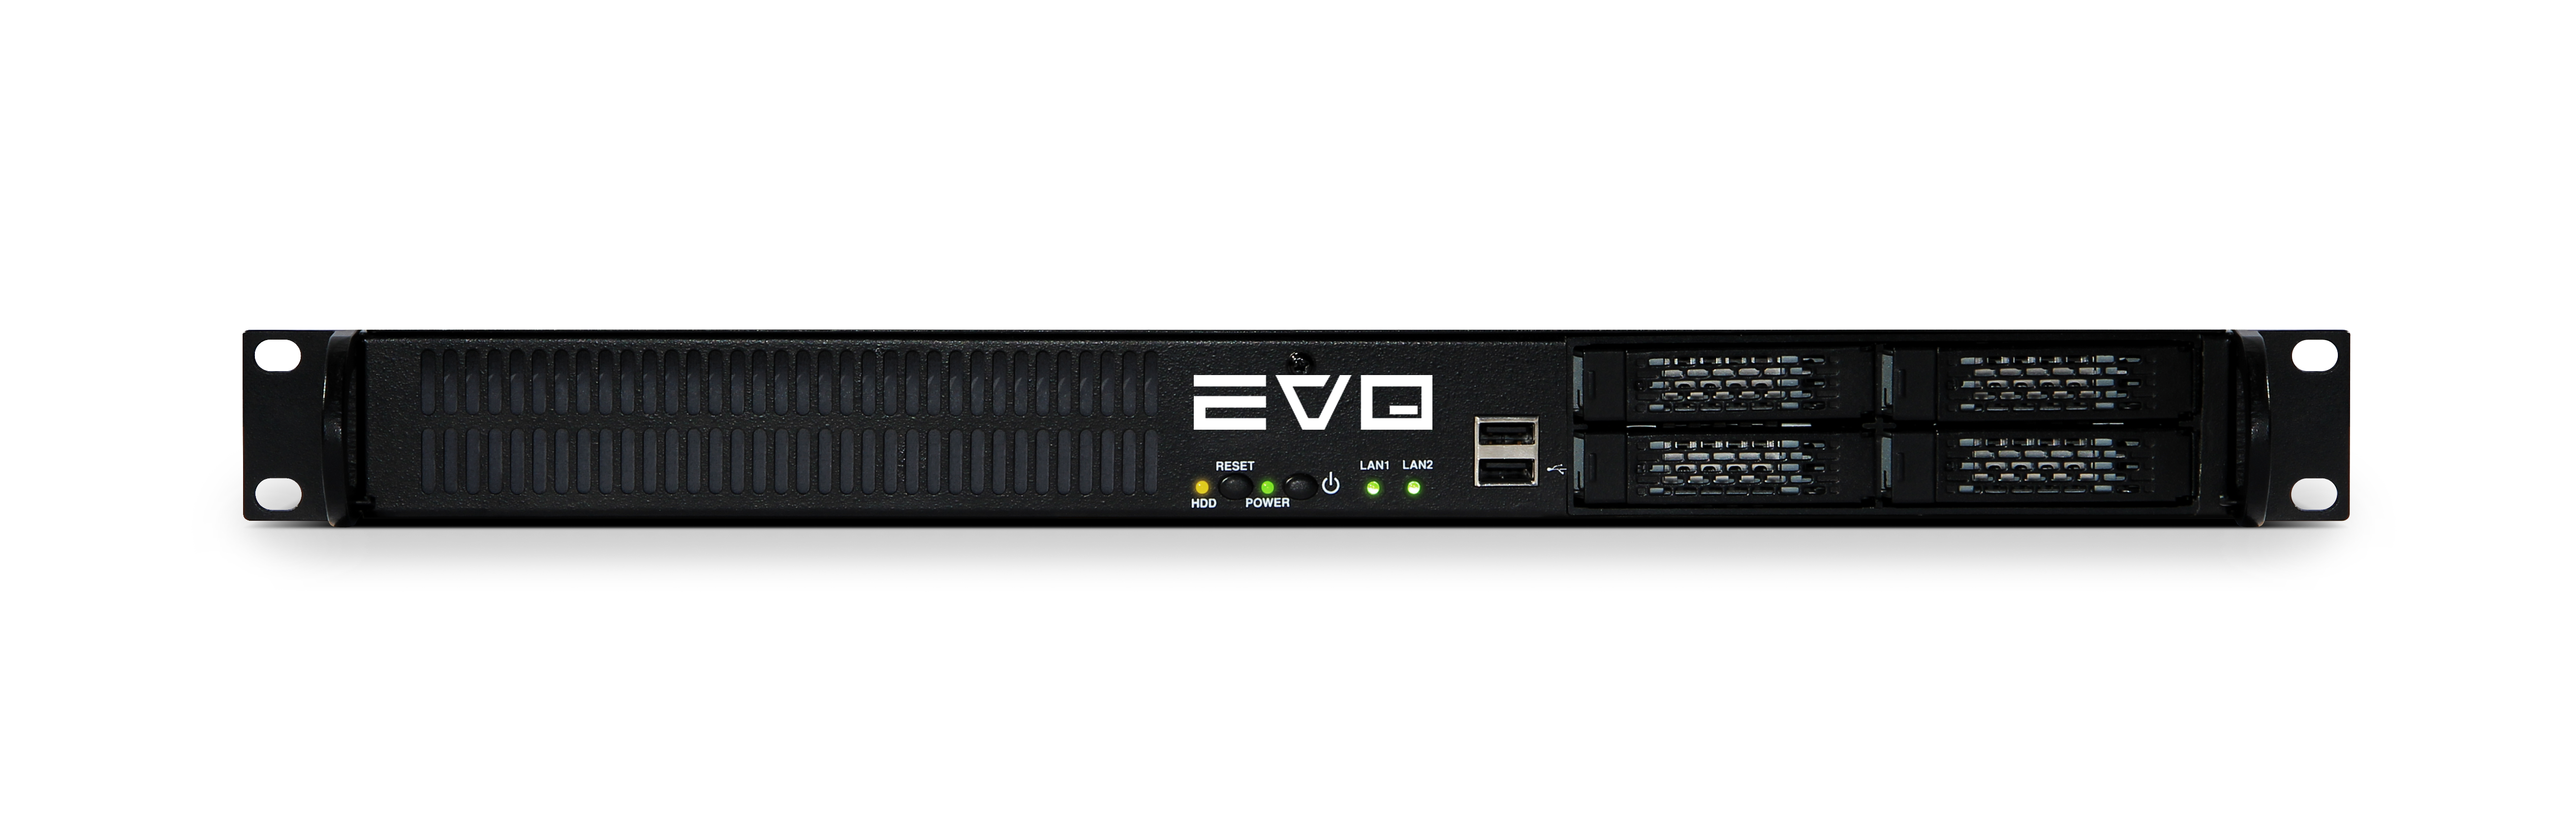 EVO Prodigy Compact, Portable SAN/NAS